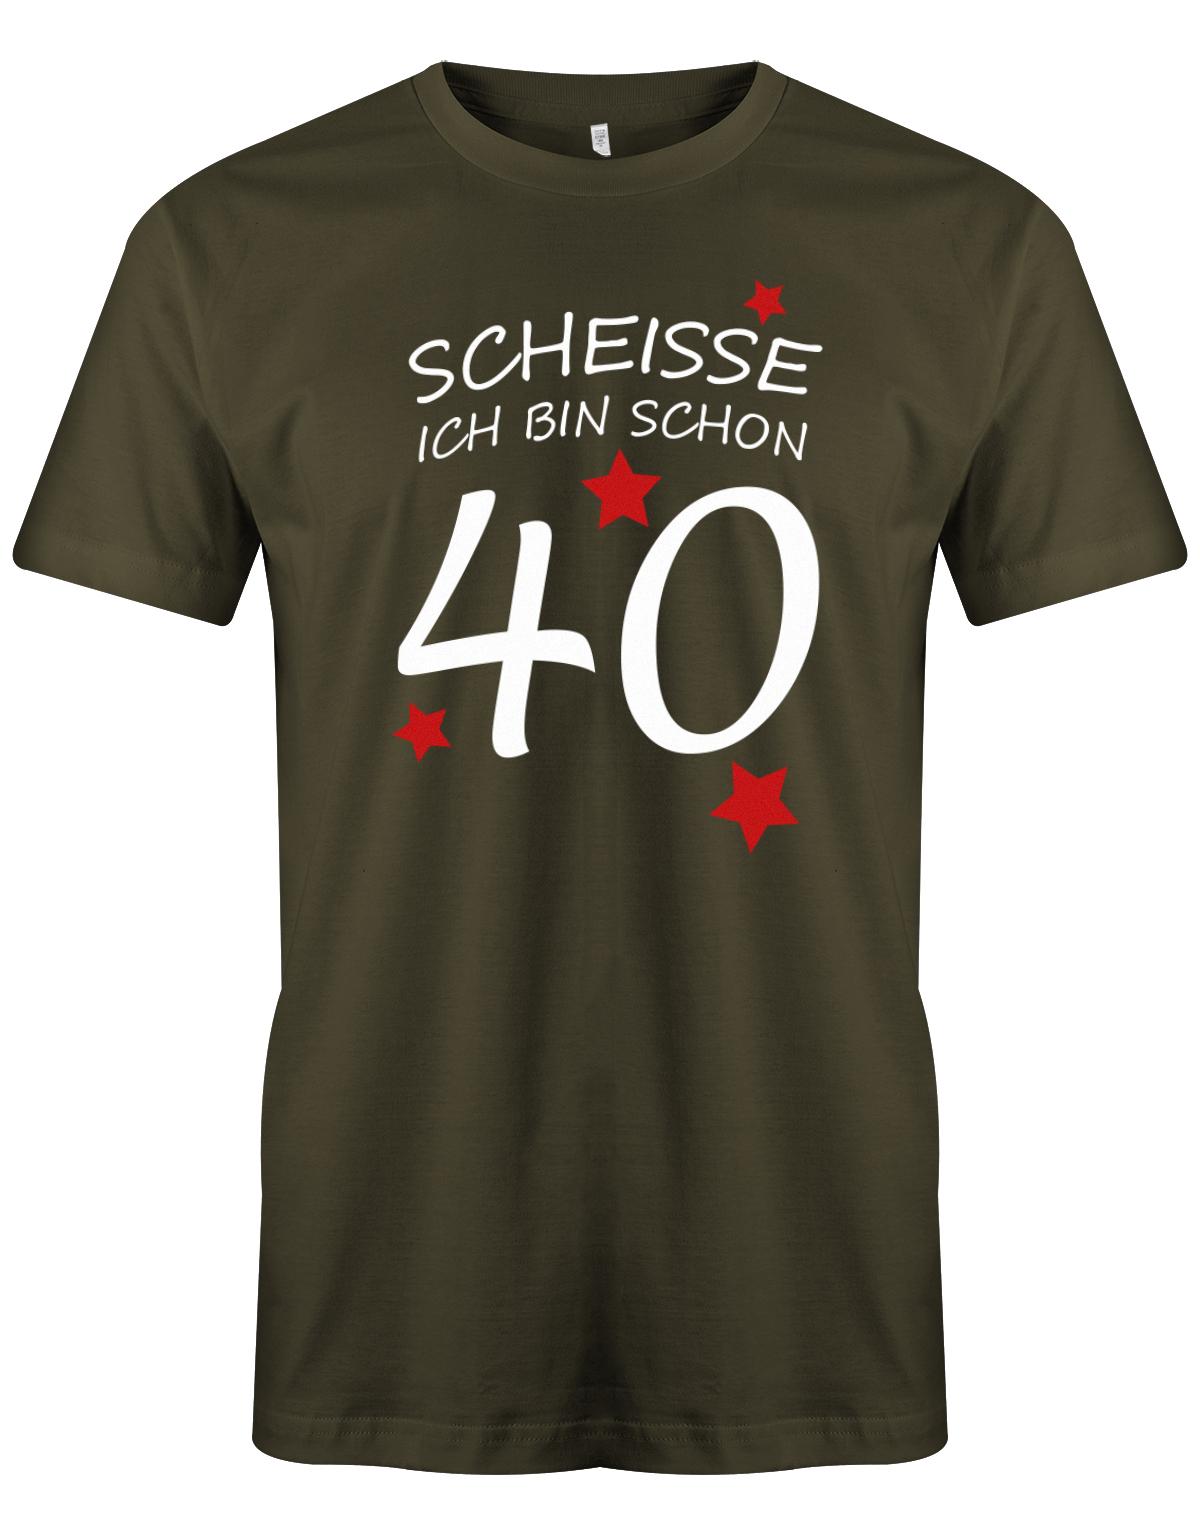 Scheisse ich bin schon 40 - T-Shirt 40 Geburtstag Männer - TShirt 1983 myShirtStore Army